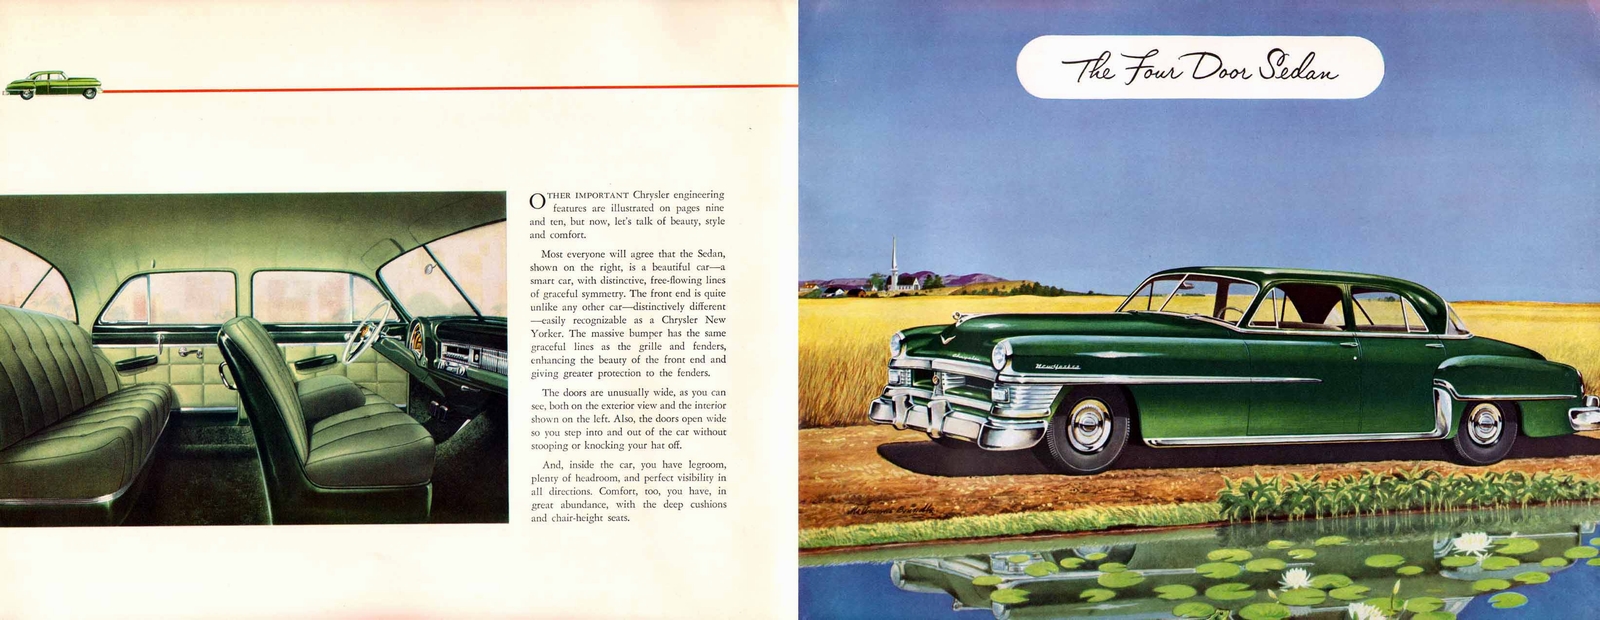 n_1952 Chrysler New Yorker-04-05.jpg